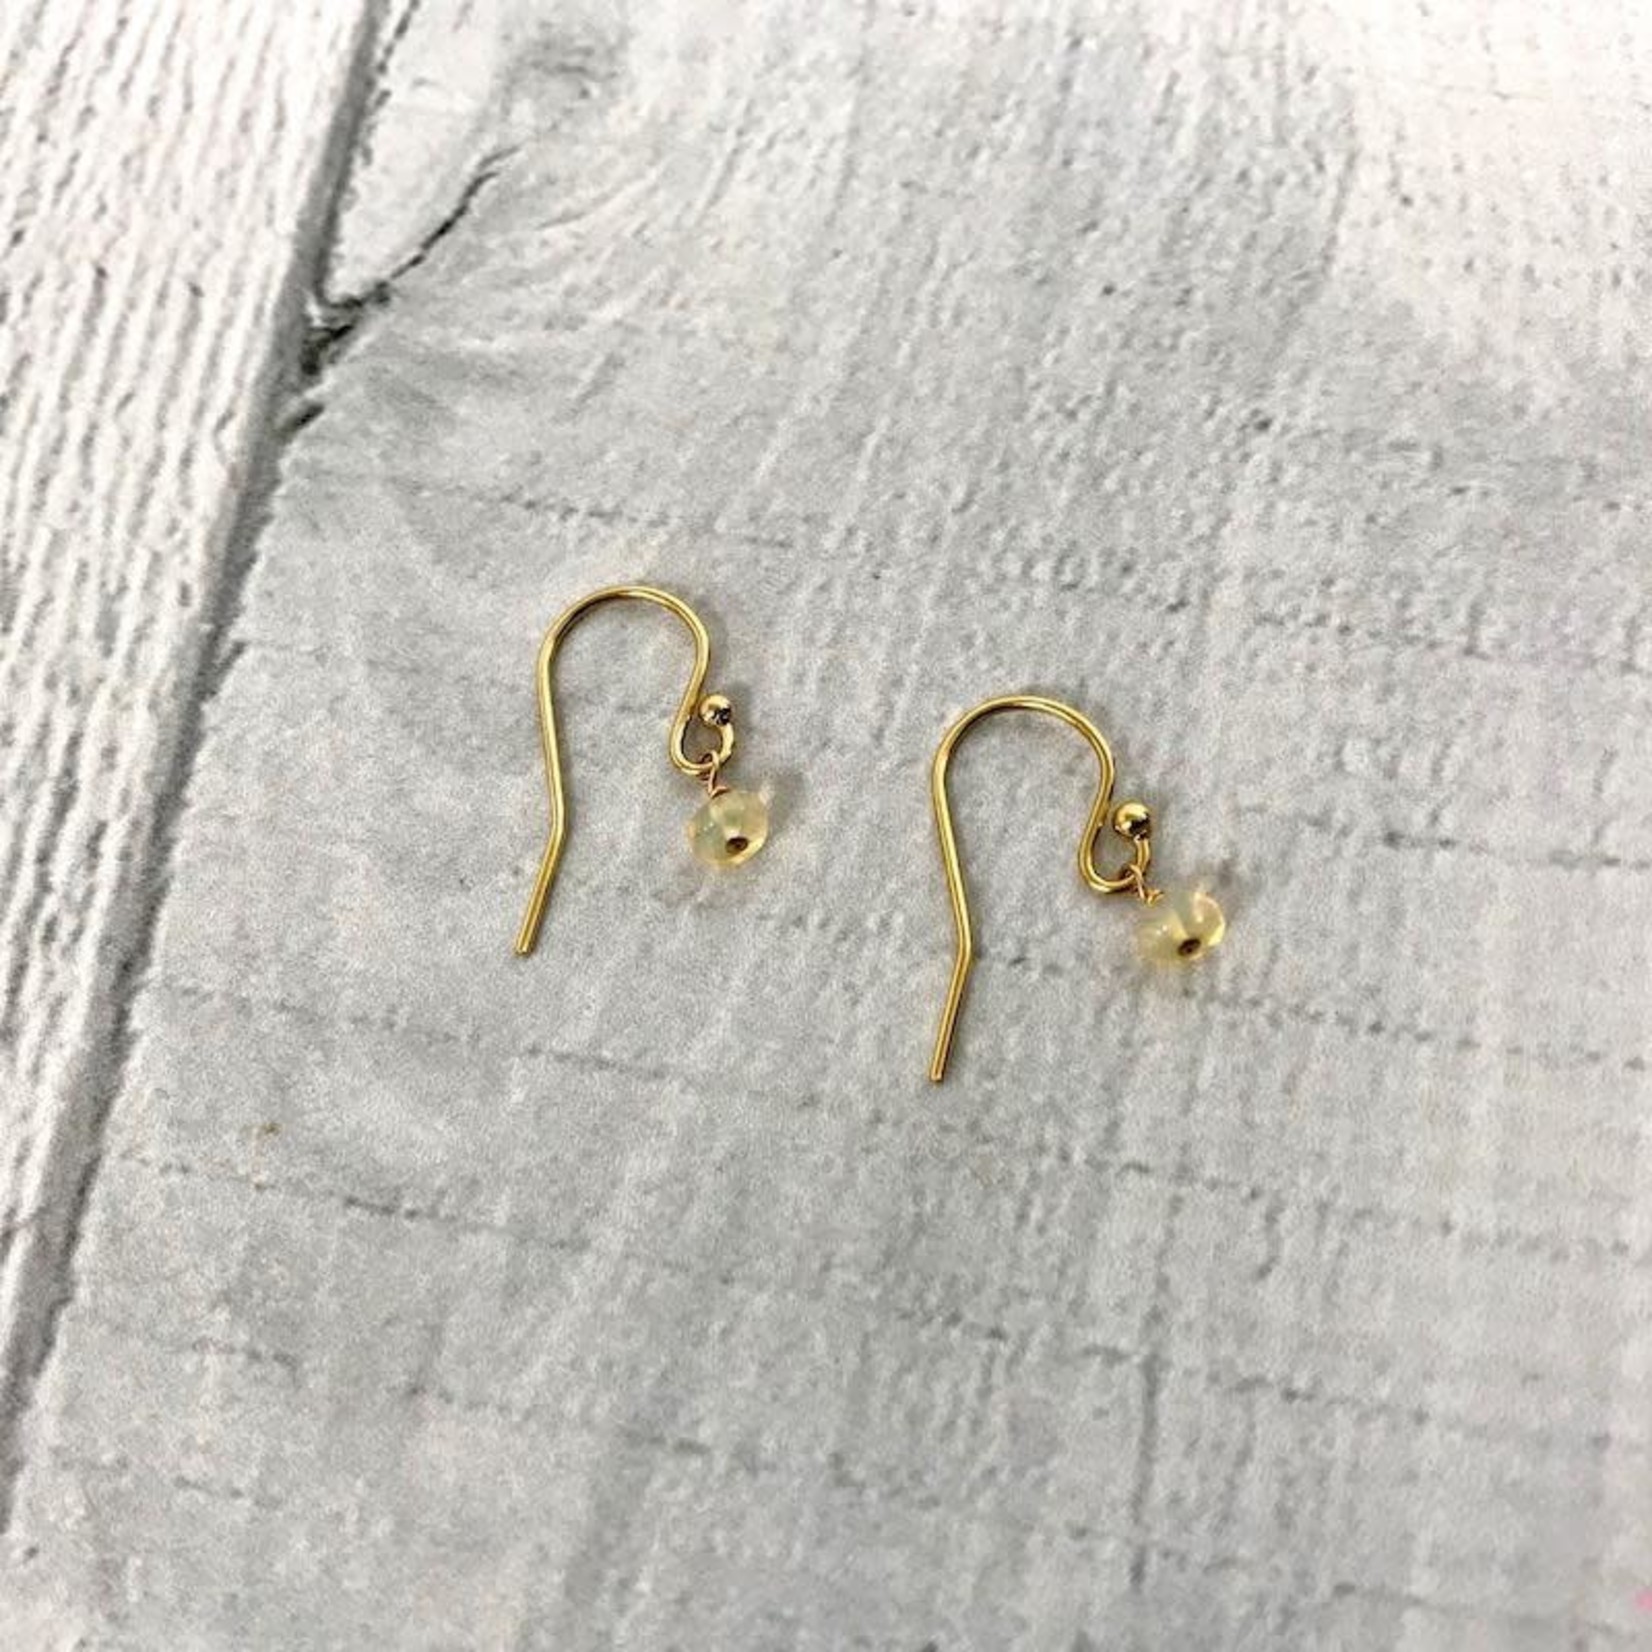 Handmade Birthstone Earrings